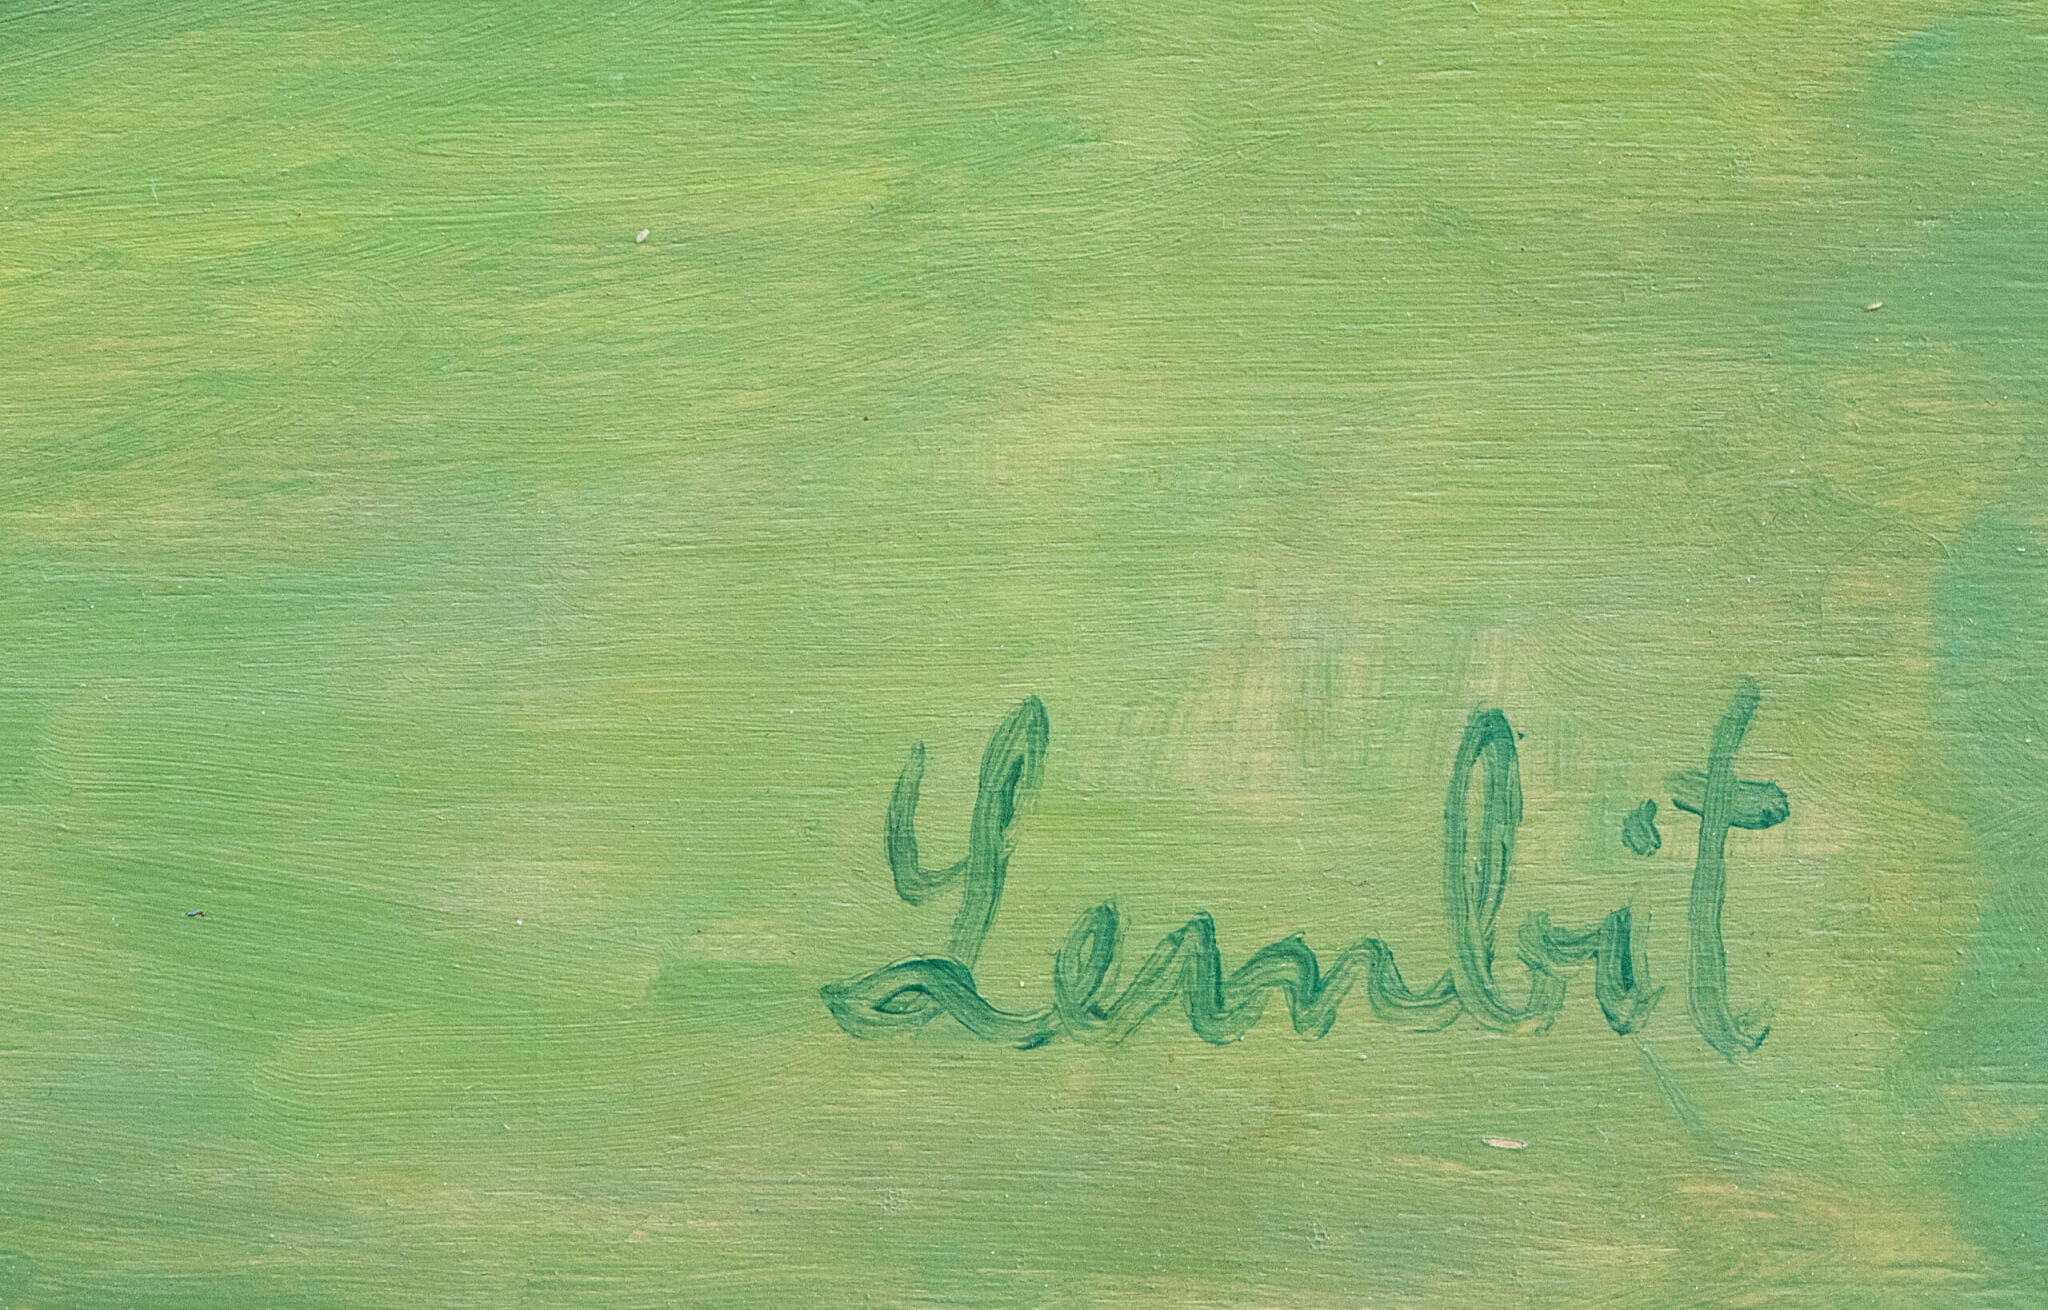 Lembit Sarapuu “Muna”, 1960ndad. 42,3 x 54,5 cm.